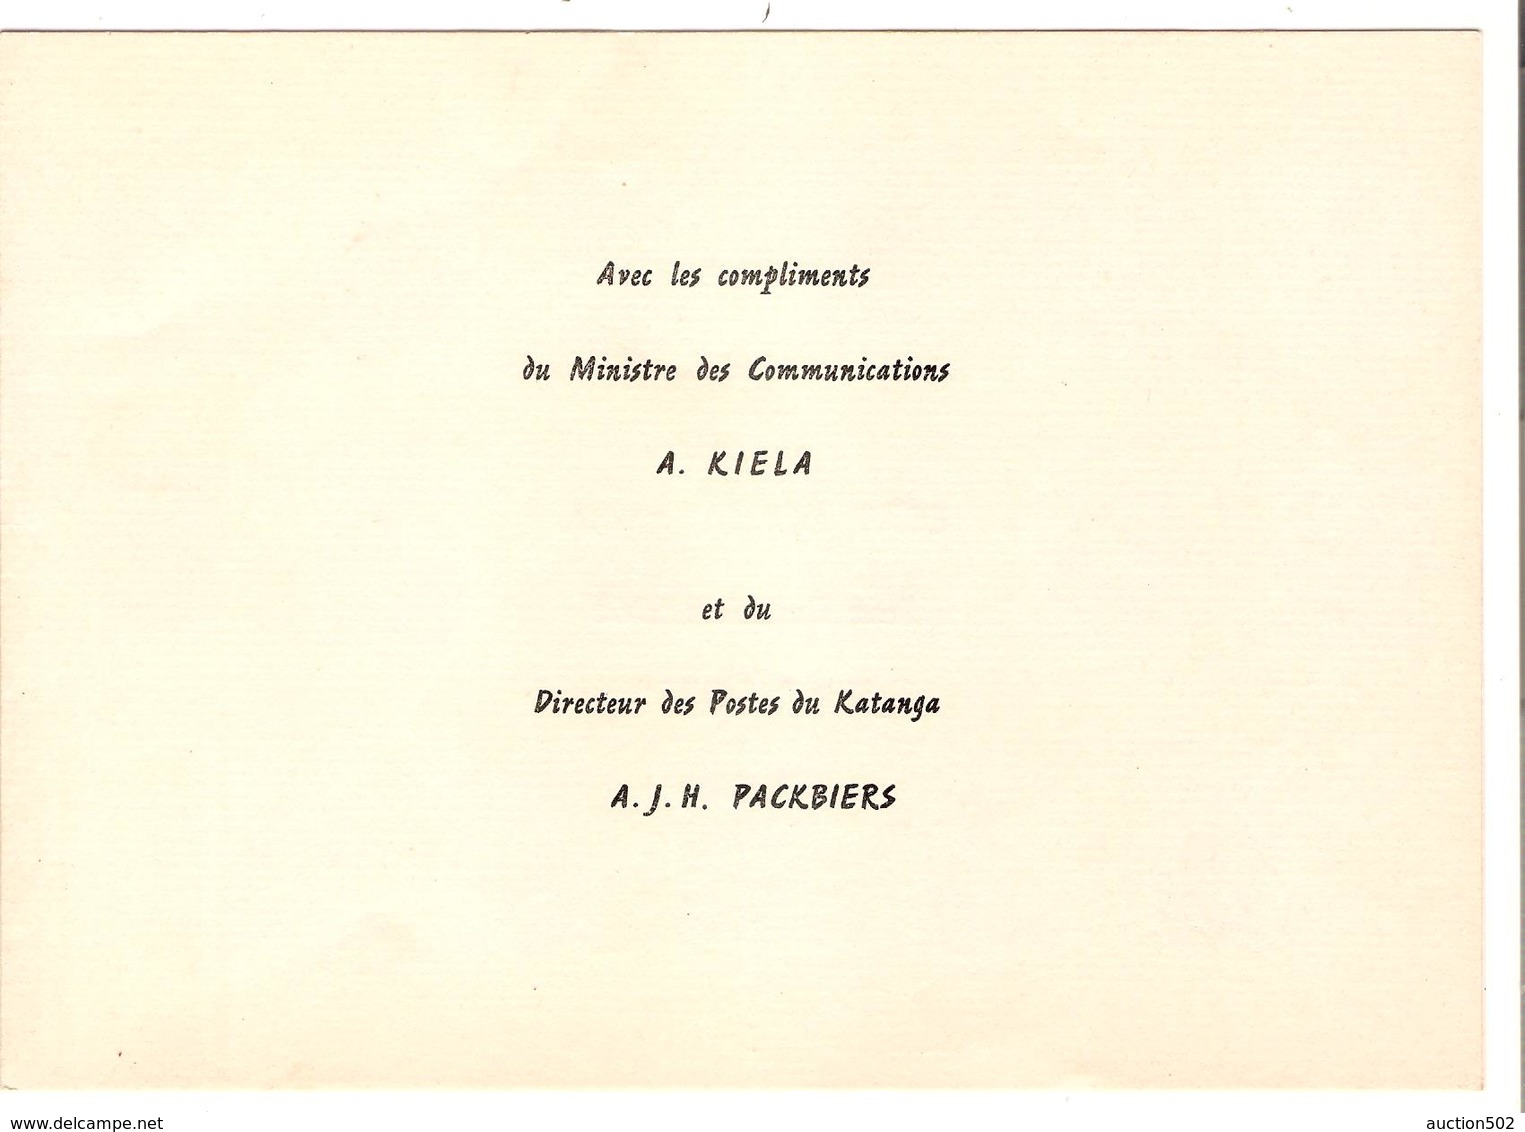 PR6522/ Katanga TP 6/49 Emission 1960 Ministère Communications A.Kiela&Directeur des Postes du Katanga A.J.H.Packbiers